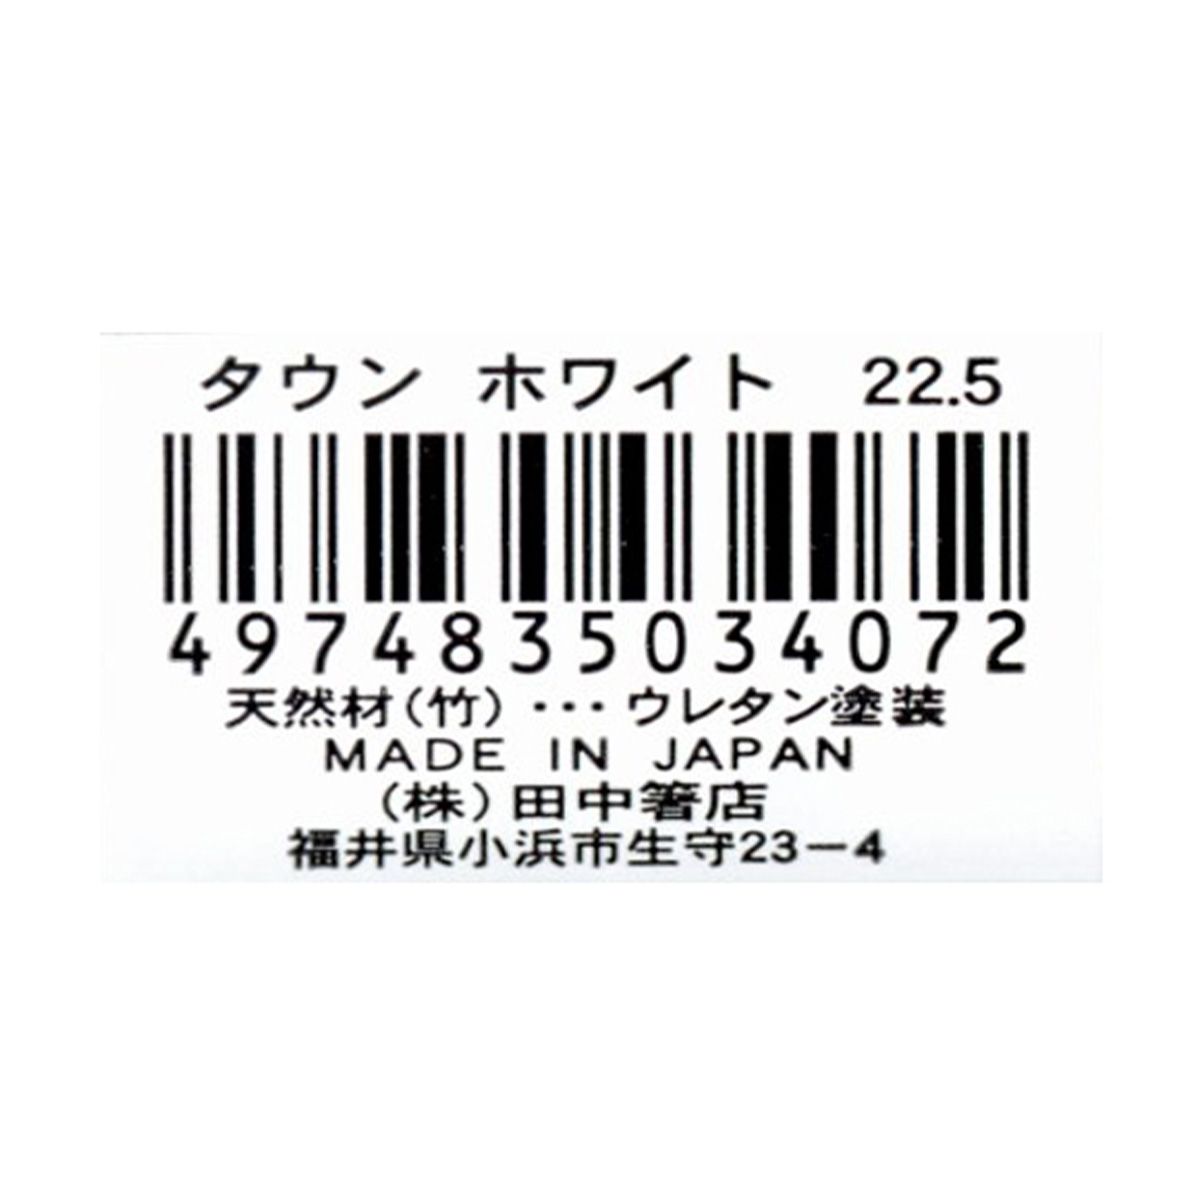 お箸 天然竹製  タウン箸 ホワイト  22.5cm 9001/345945